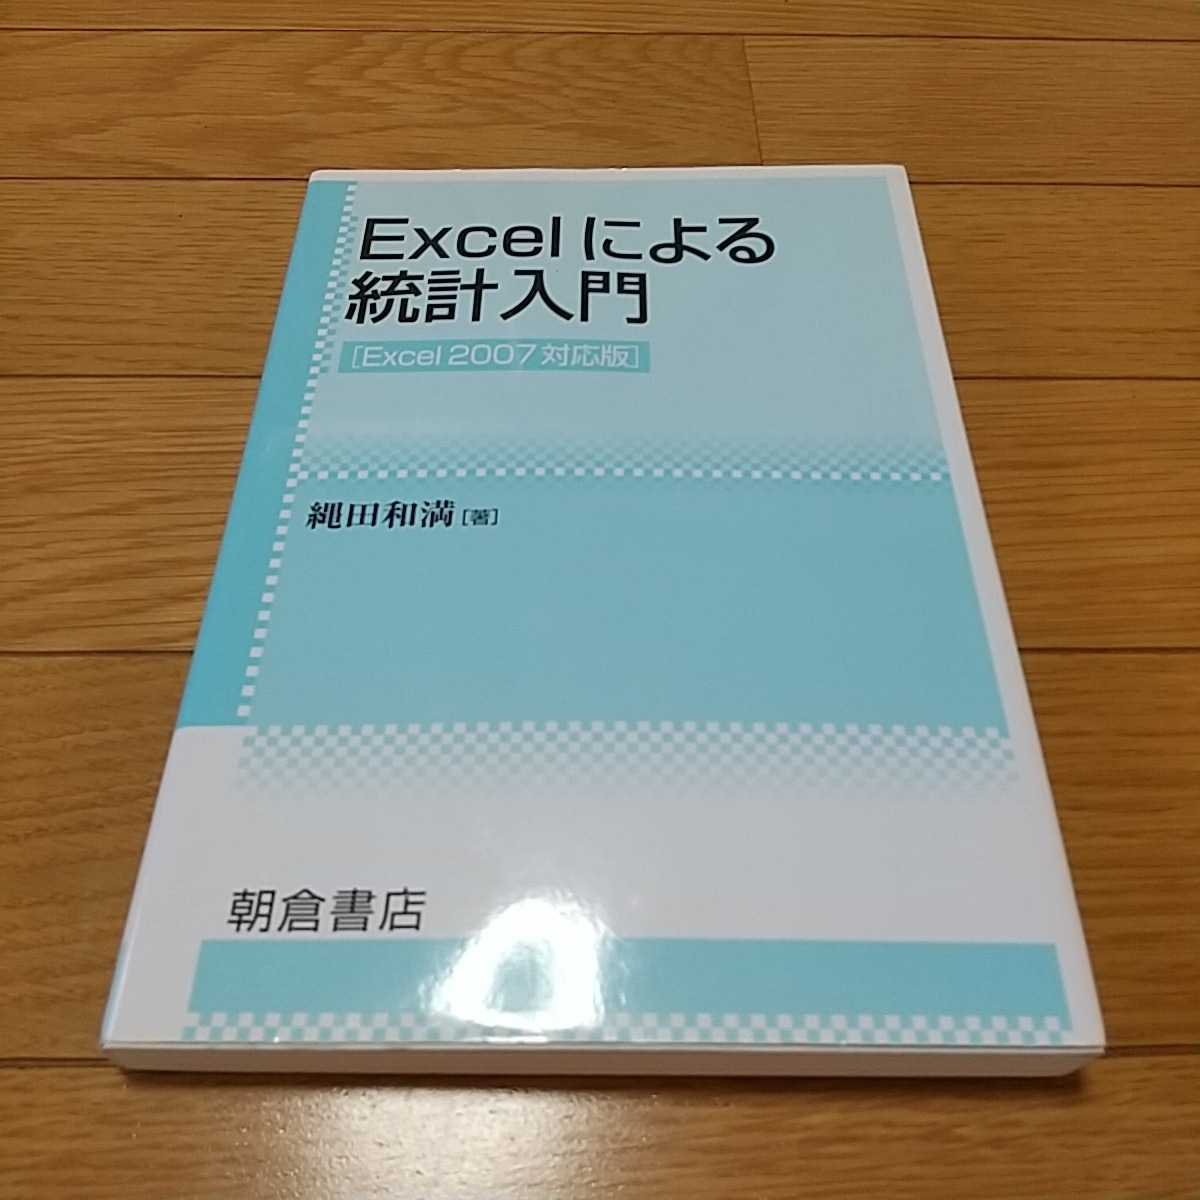 Excel по причине статистика введение Excel2007 соответствует версия утро . книжный магазин б/у крупноформатная таблица счет анализ Excel 0351012